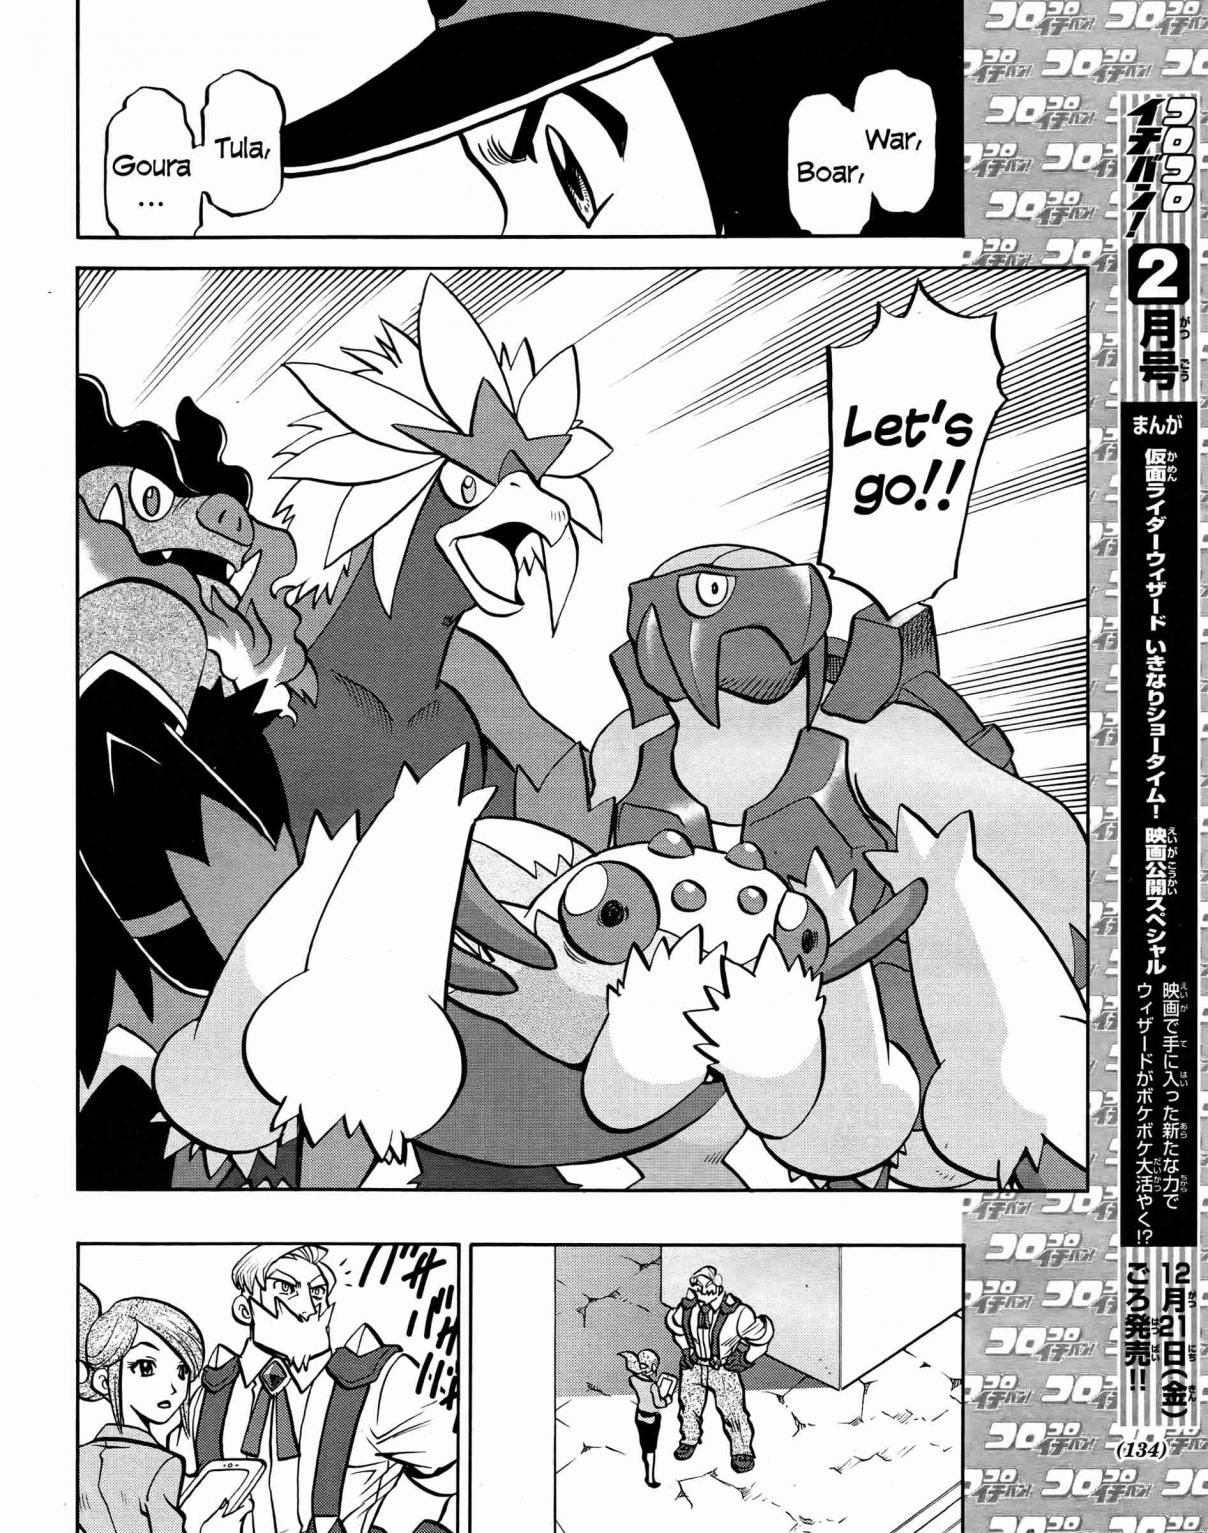 Pokémon Special Vol. 50 Ch. 511